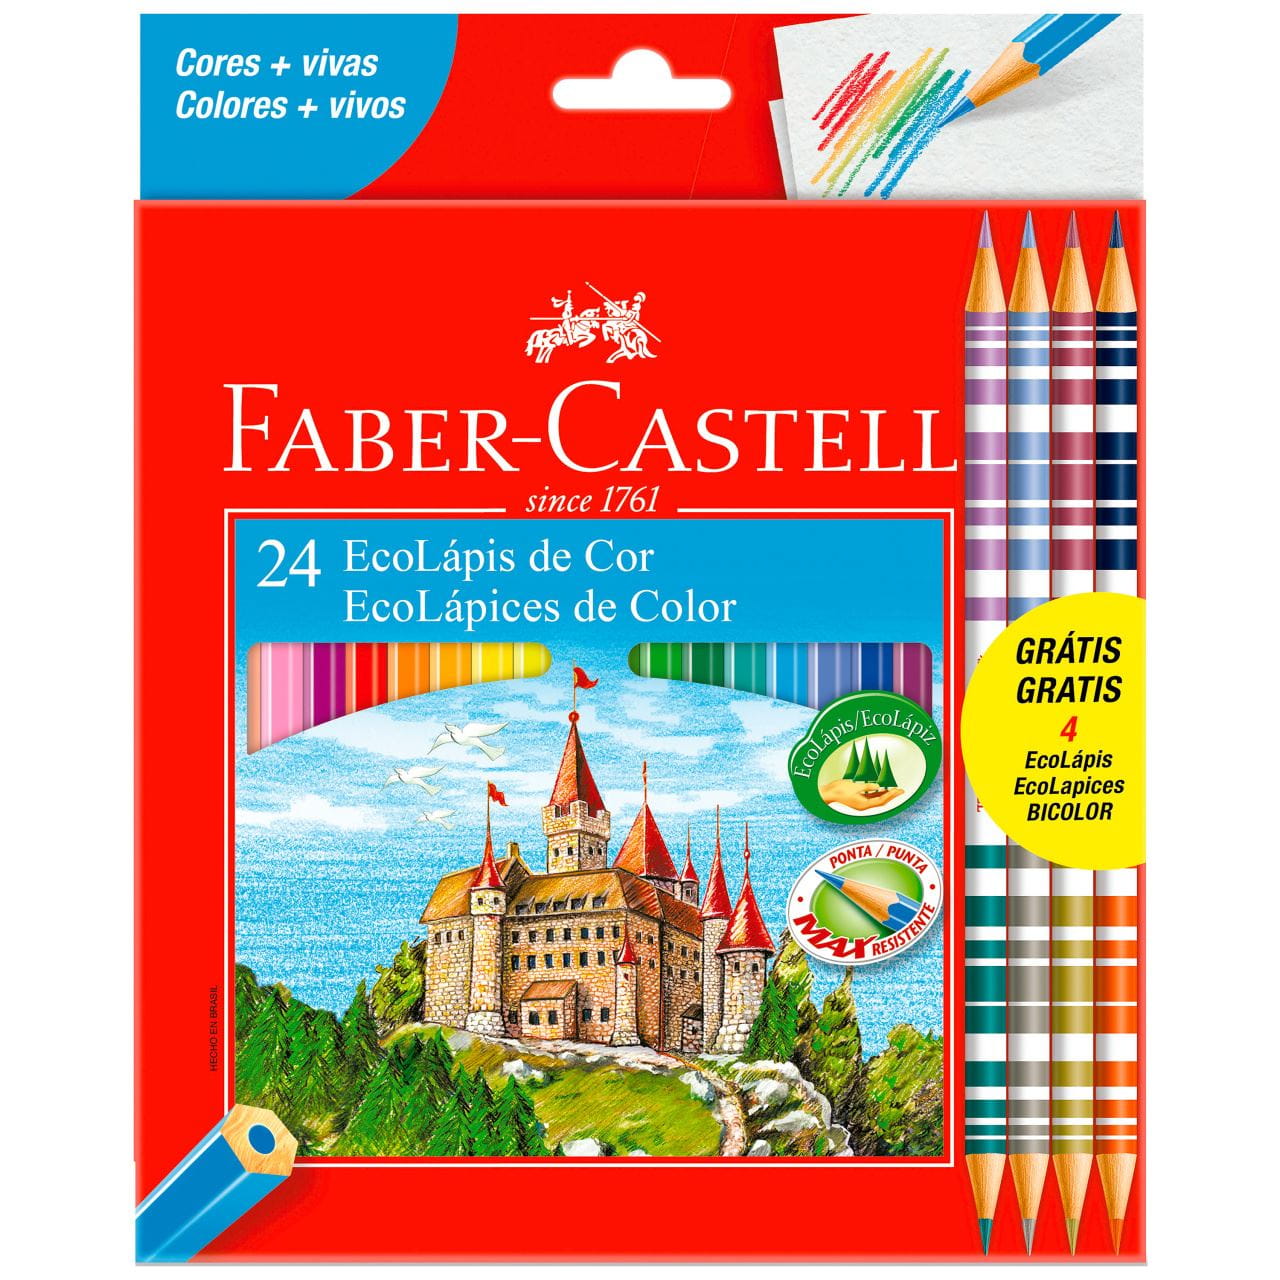 Faber-Castell - Ecolapis de Cor 20 Cores + 4 Bicolor